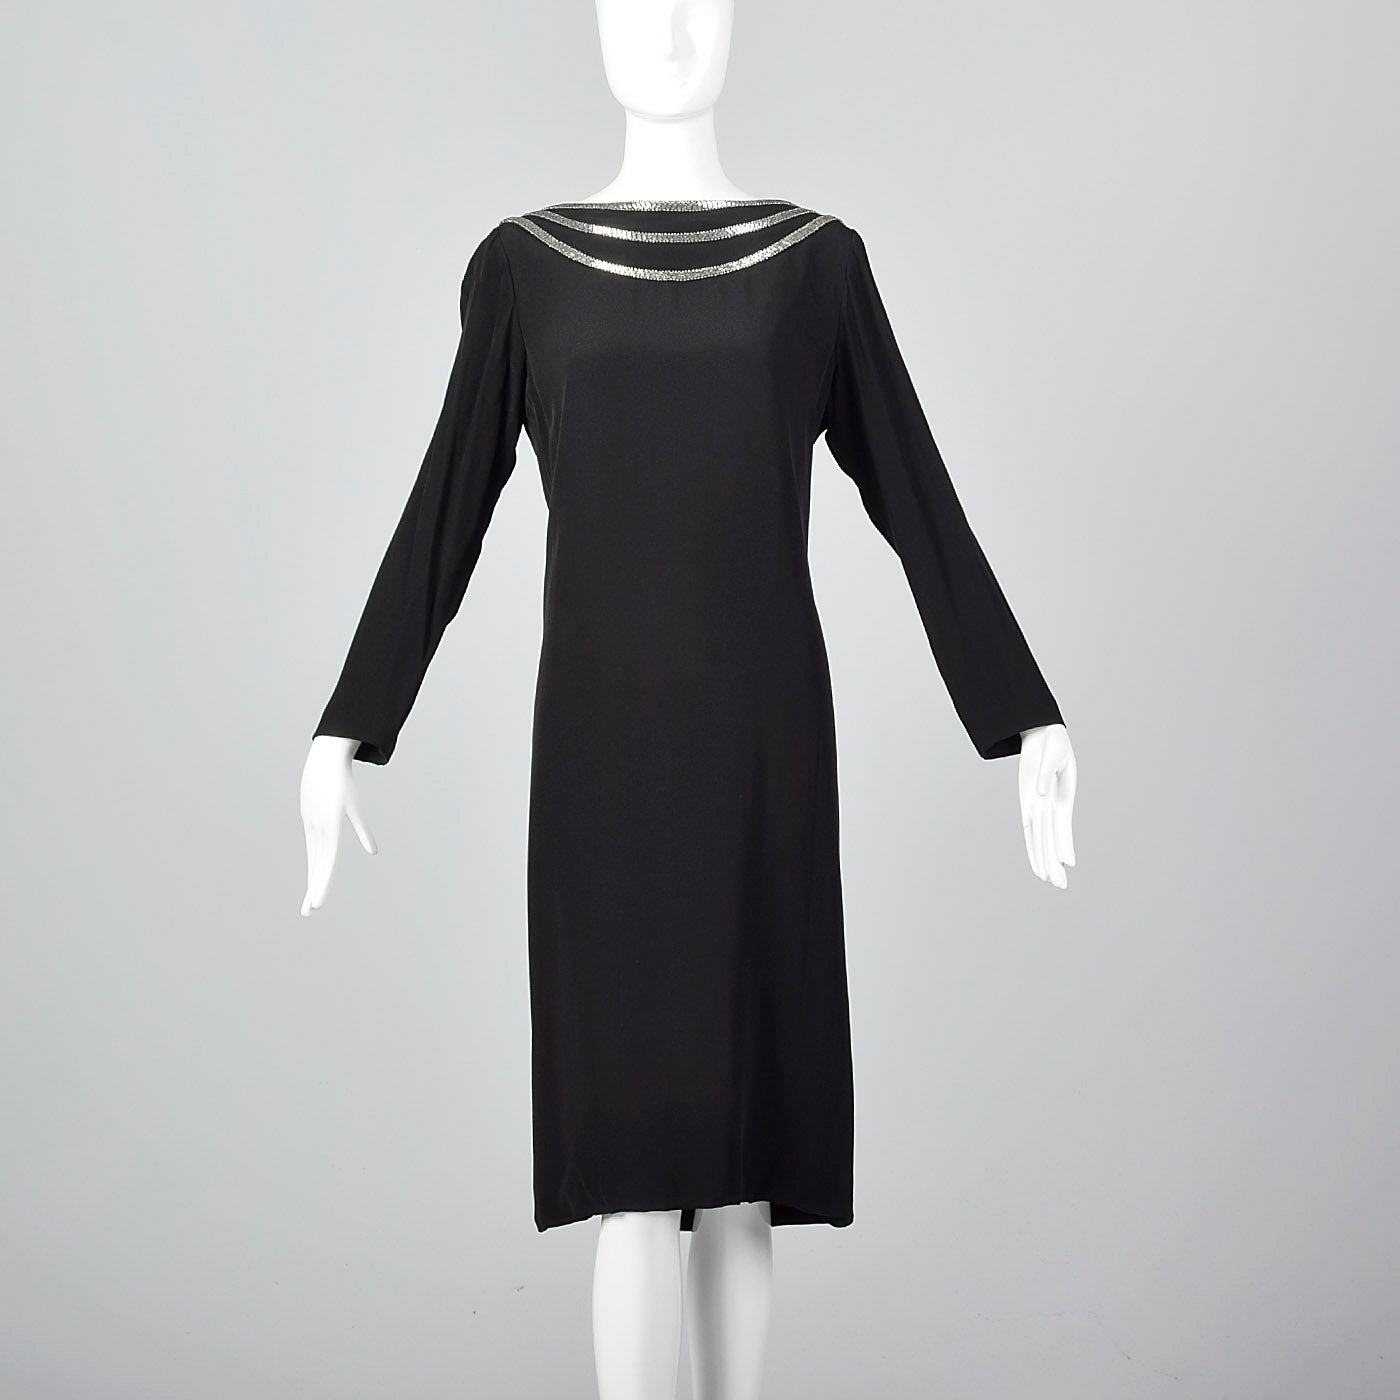 Chanel elegant vintage little black off-shoulder dress